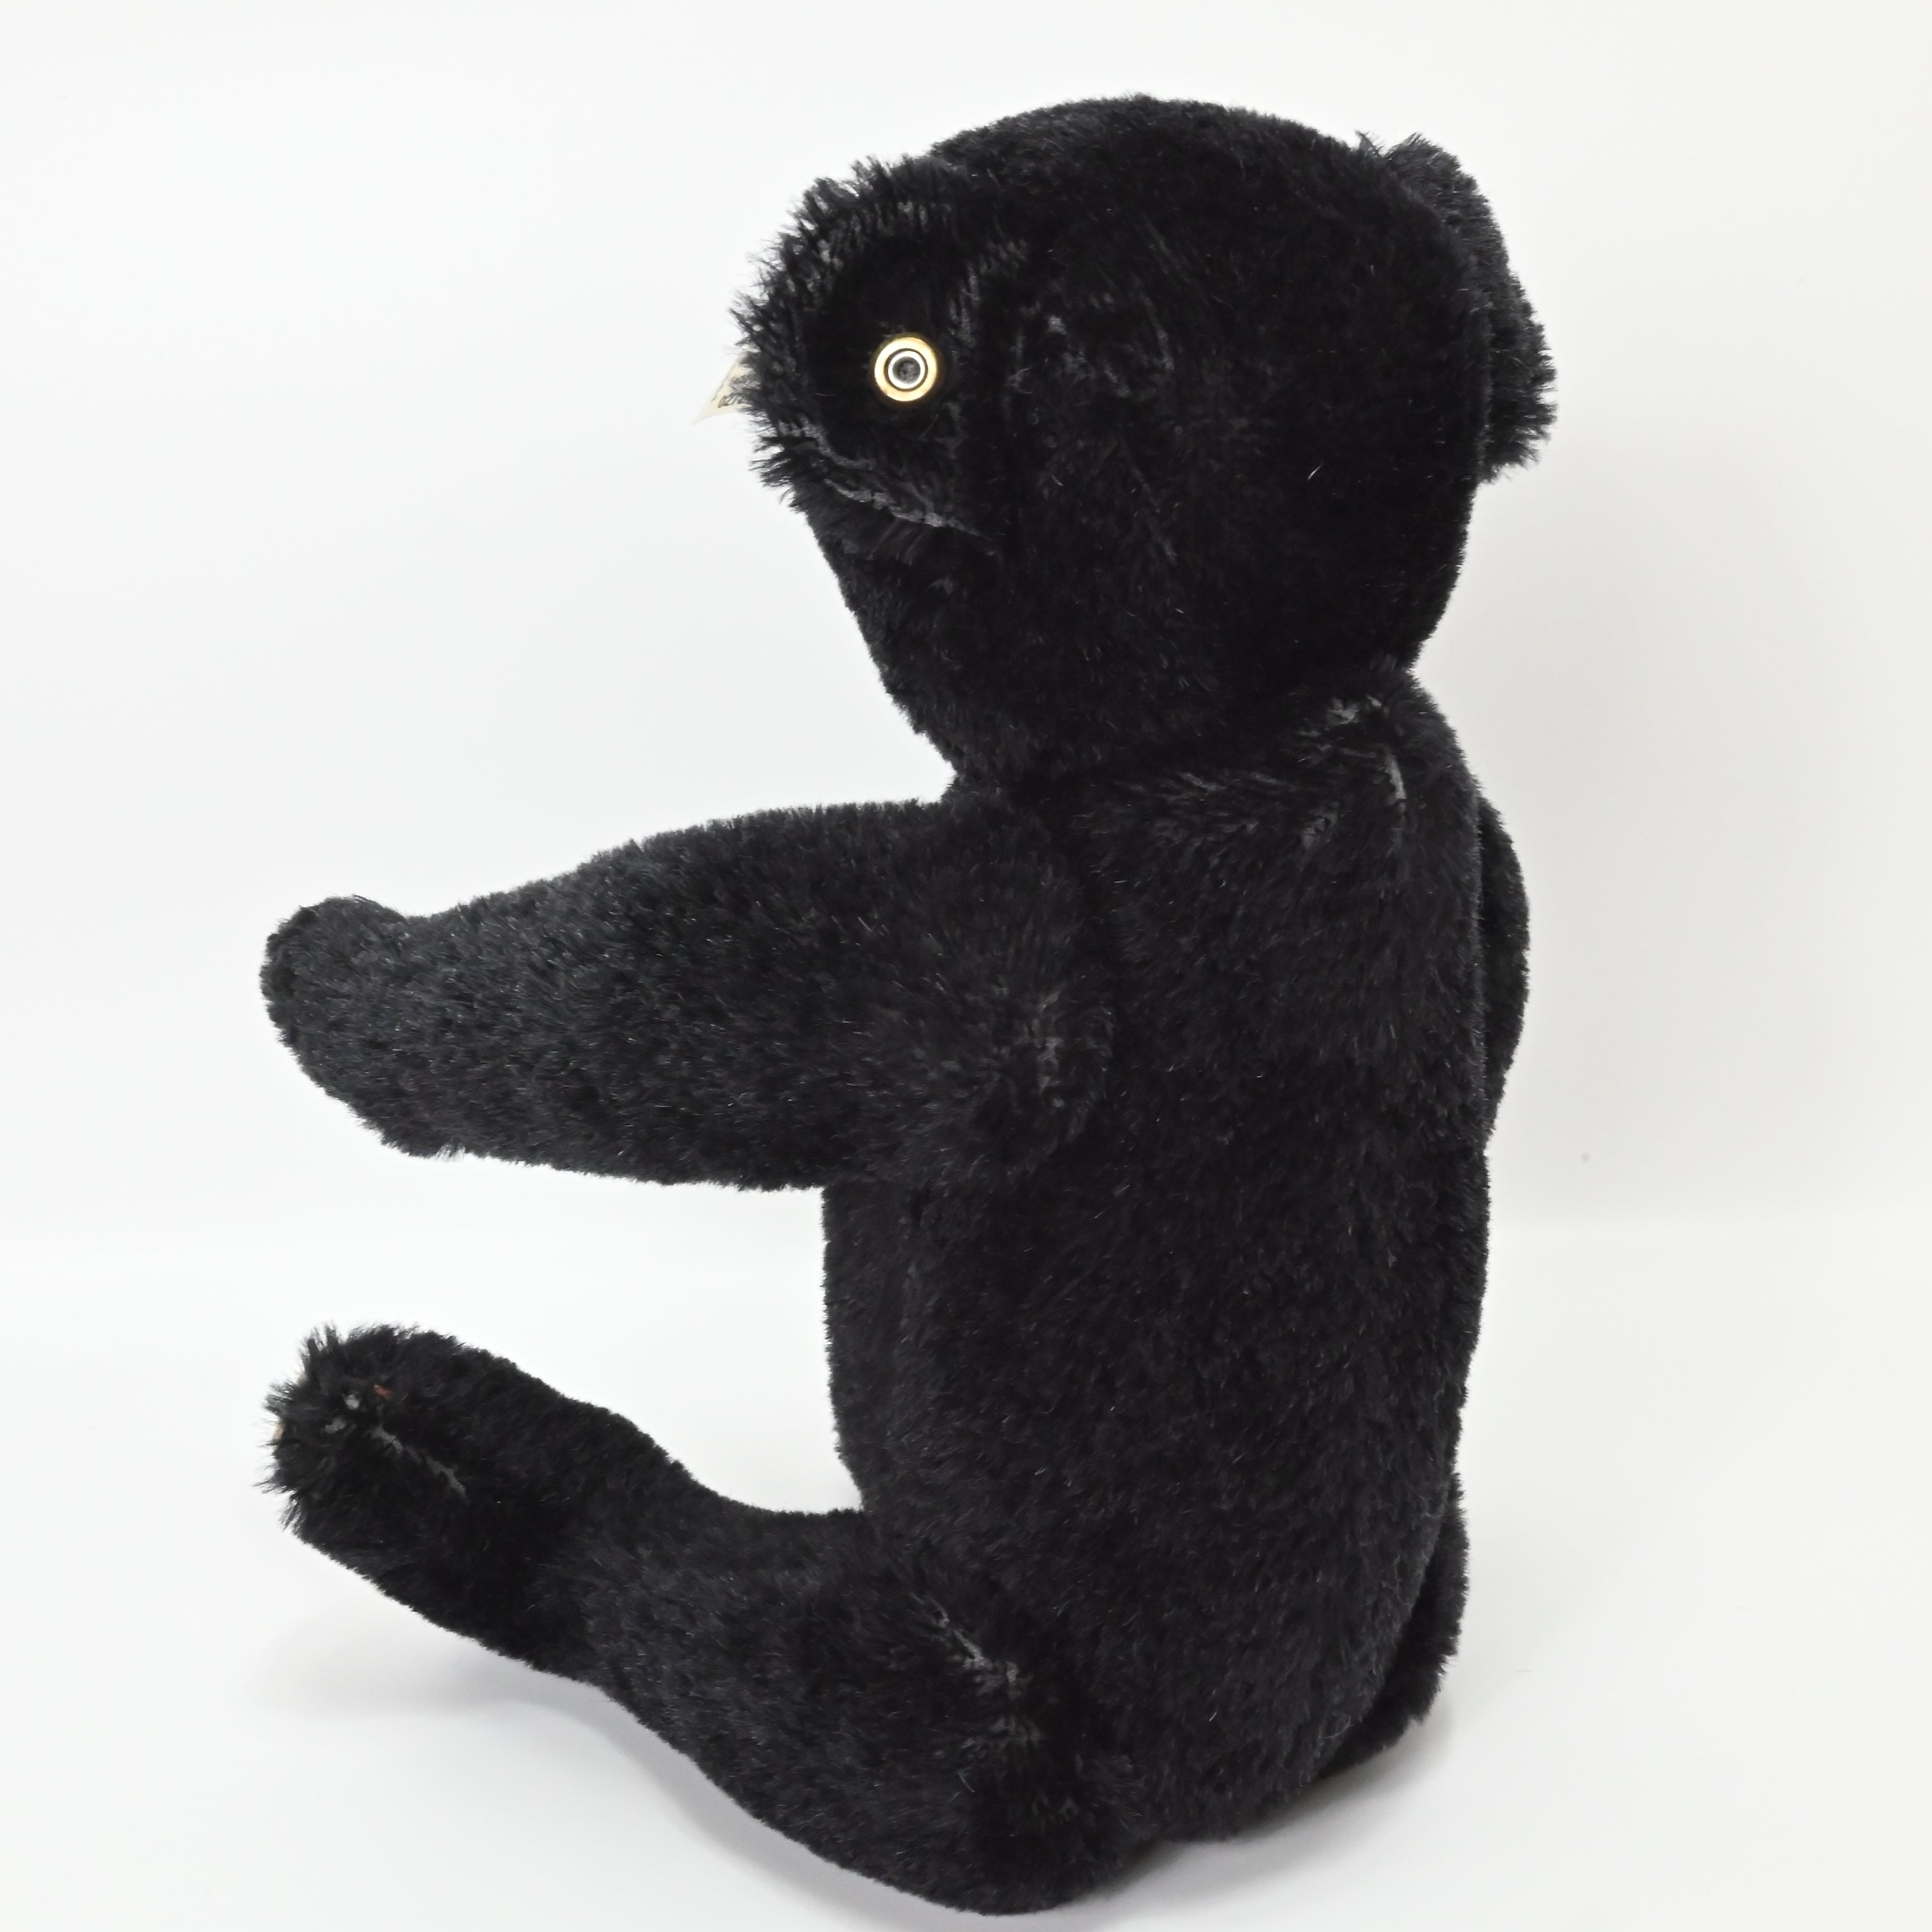 Steiff Teddy Bear Limited Edition Black 1908 Replica - 408564 